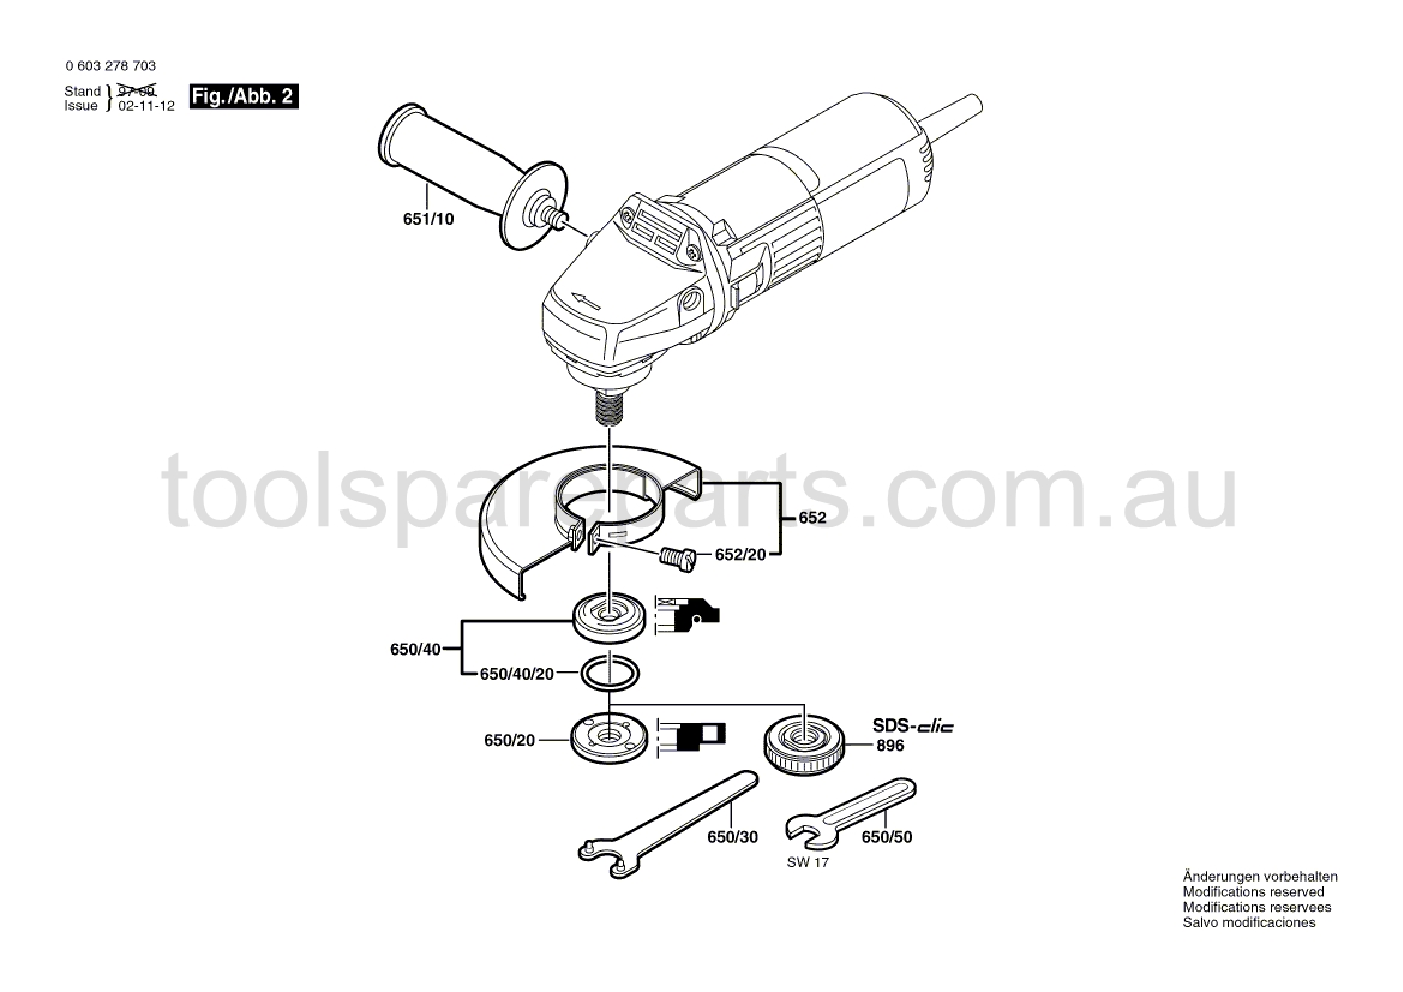 Bosch PWS 7-115 E 0603278737  Diagram 2